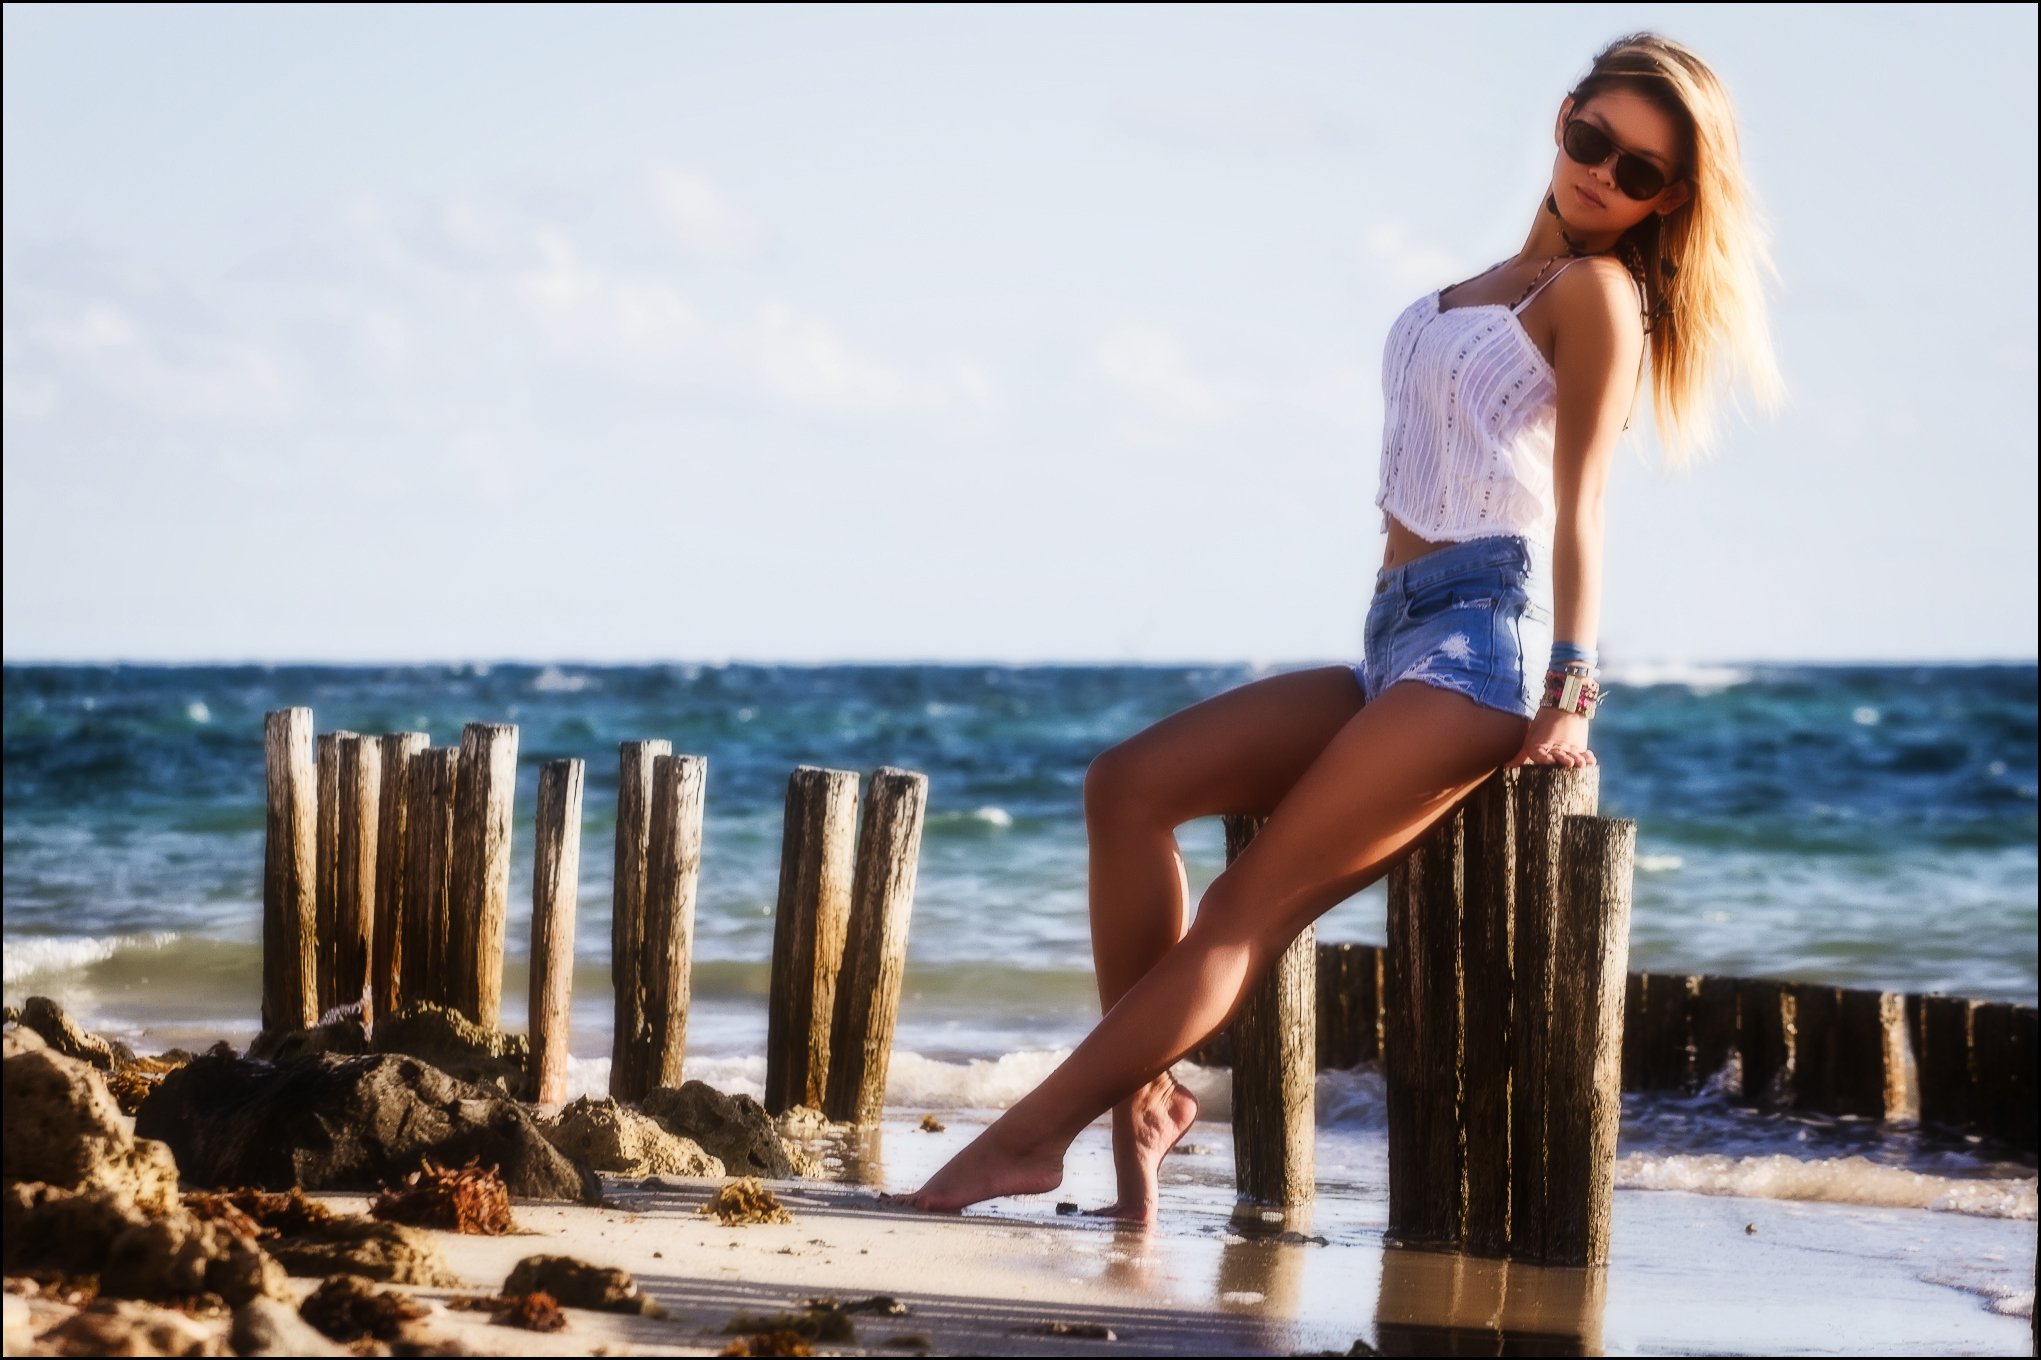 Русская девушка в шортах. Девушка в шортах. Фотосессия на пляже в шортах. Красивые девушки на пляже в шортах. Девушка в шортах на пляже.